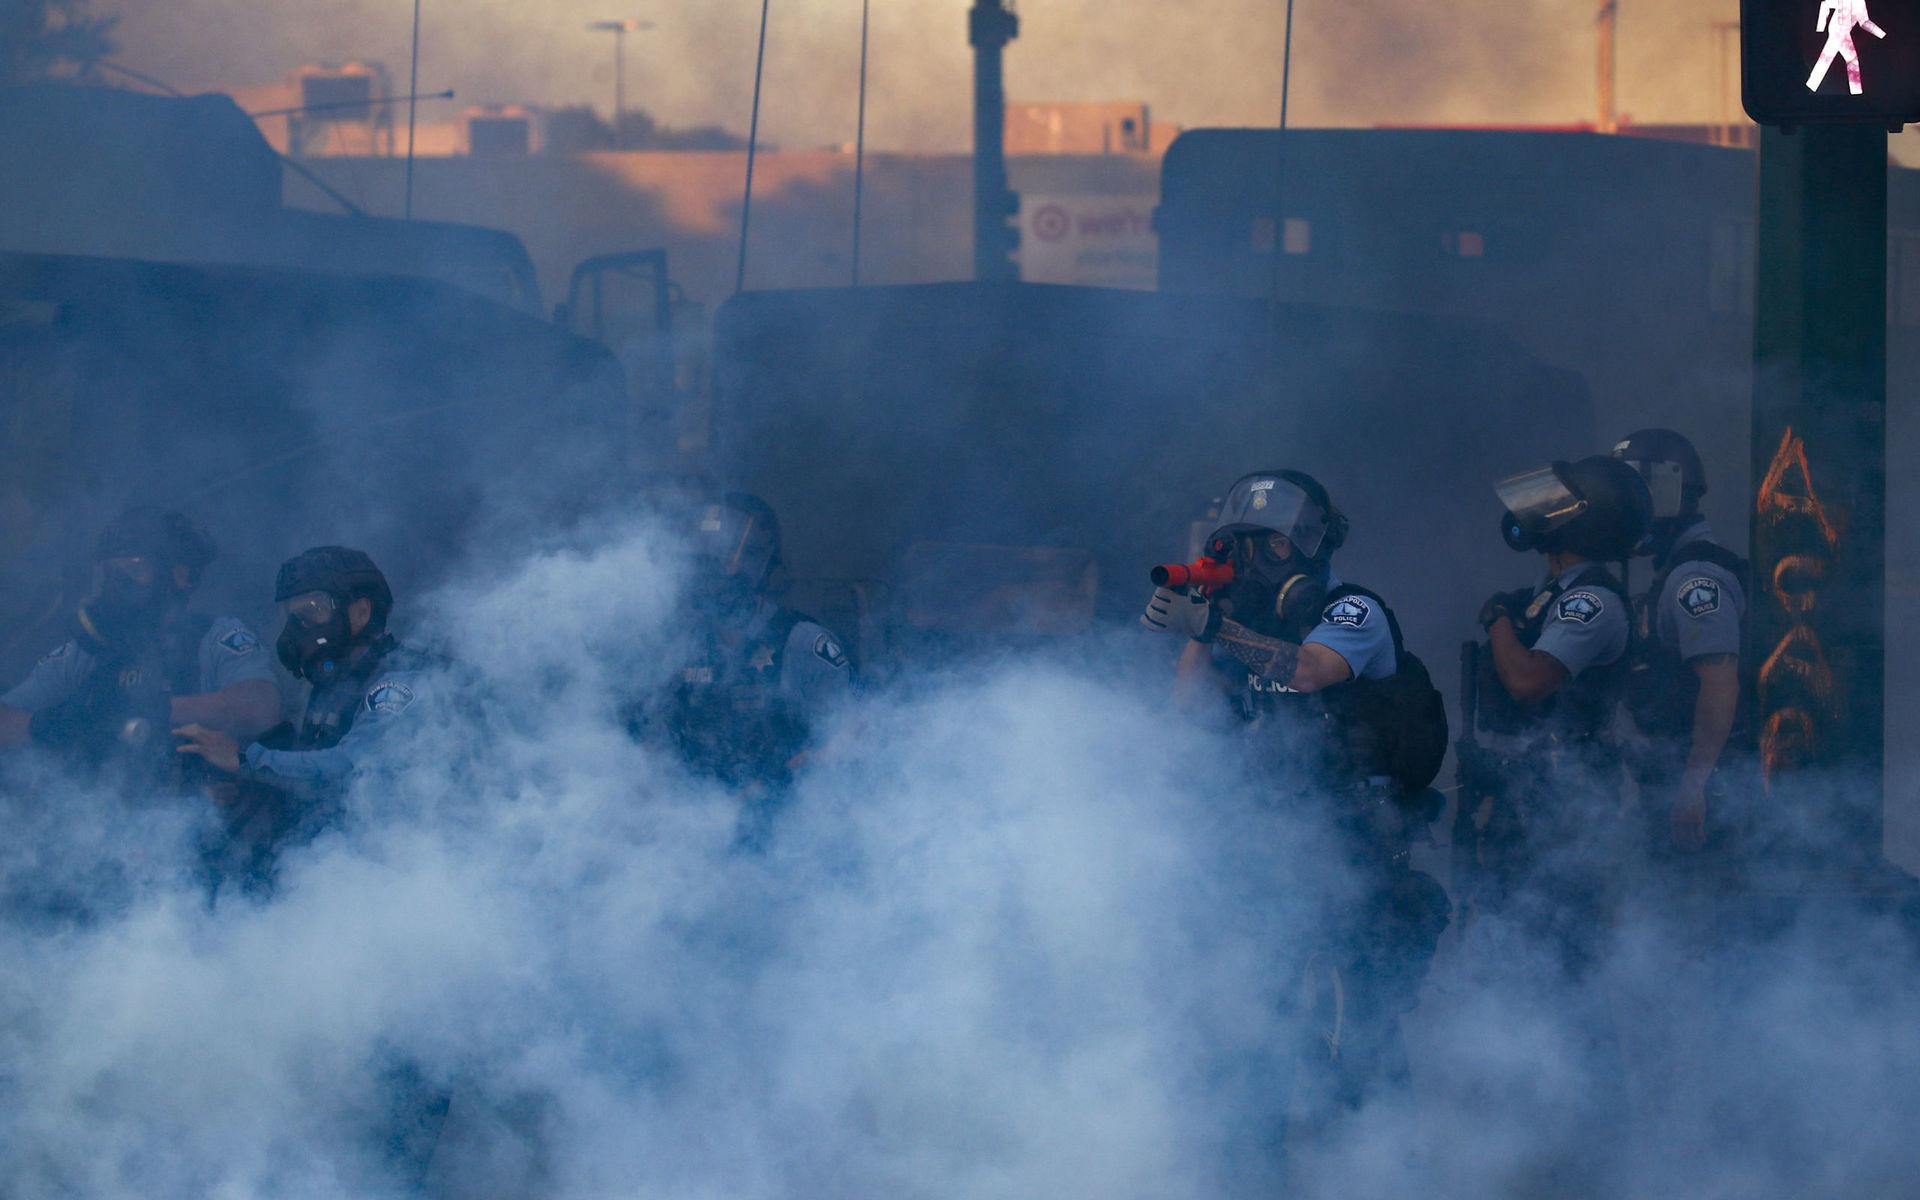 Tårgas, laser och gummikulor har använts av polisen för att mota bort demonstranter. 